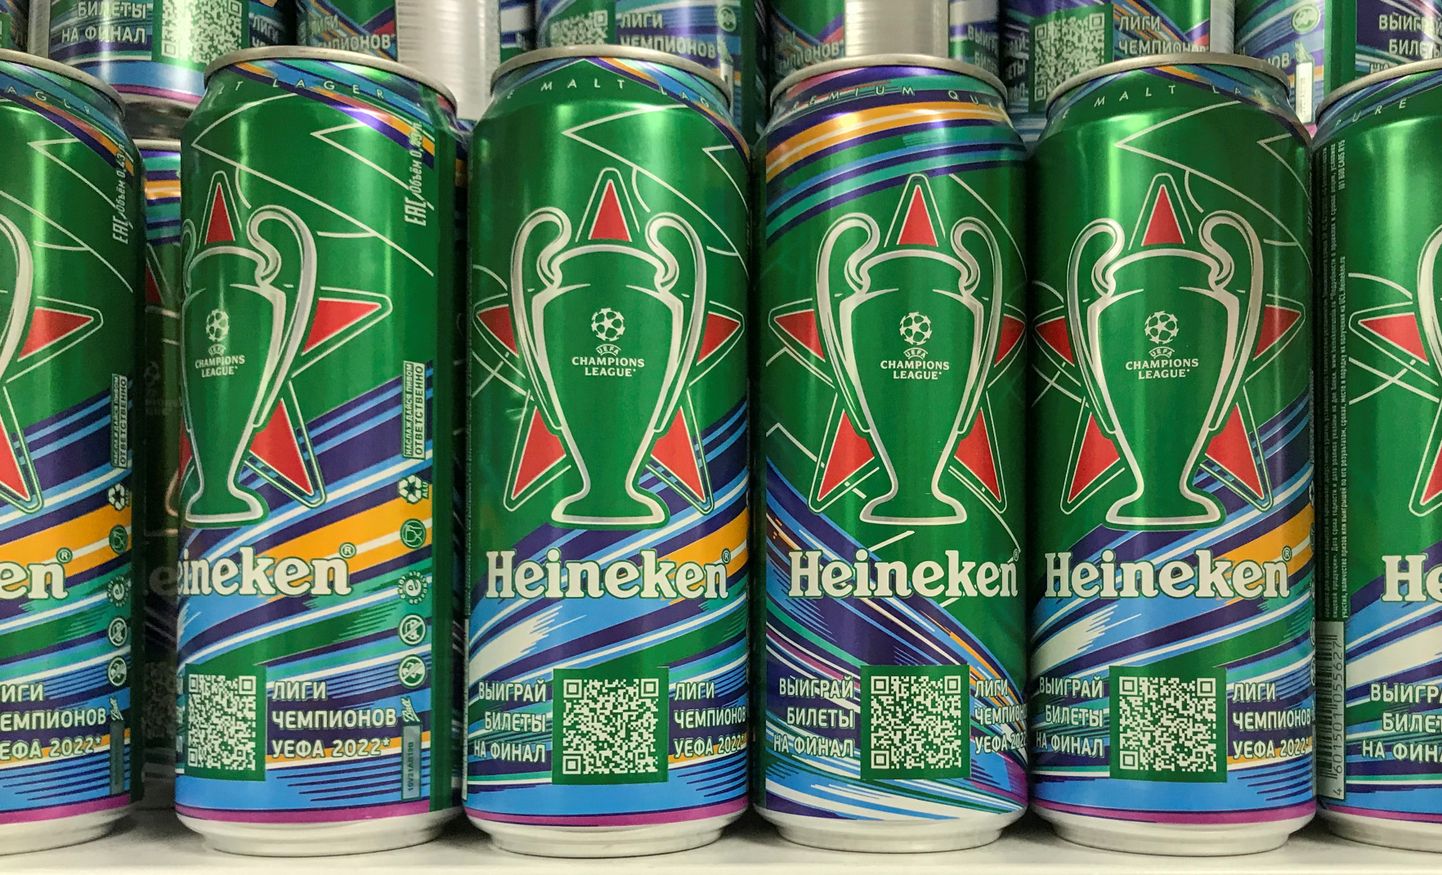 Heinekeni õllepurgid poeriiulil Moskvas. REUTERS/Staff